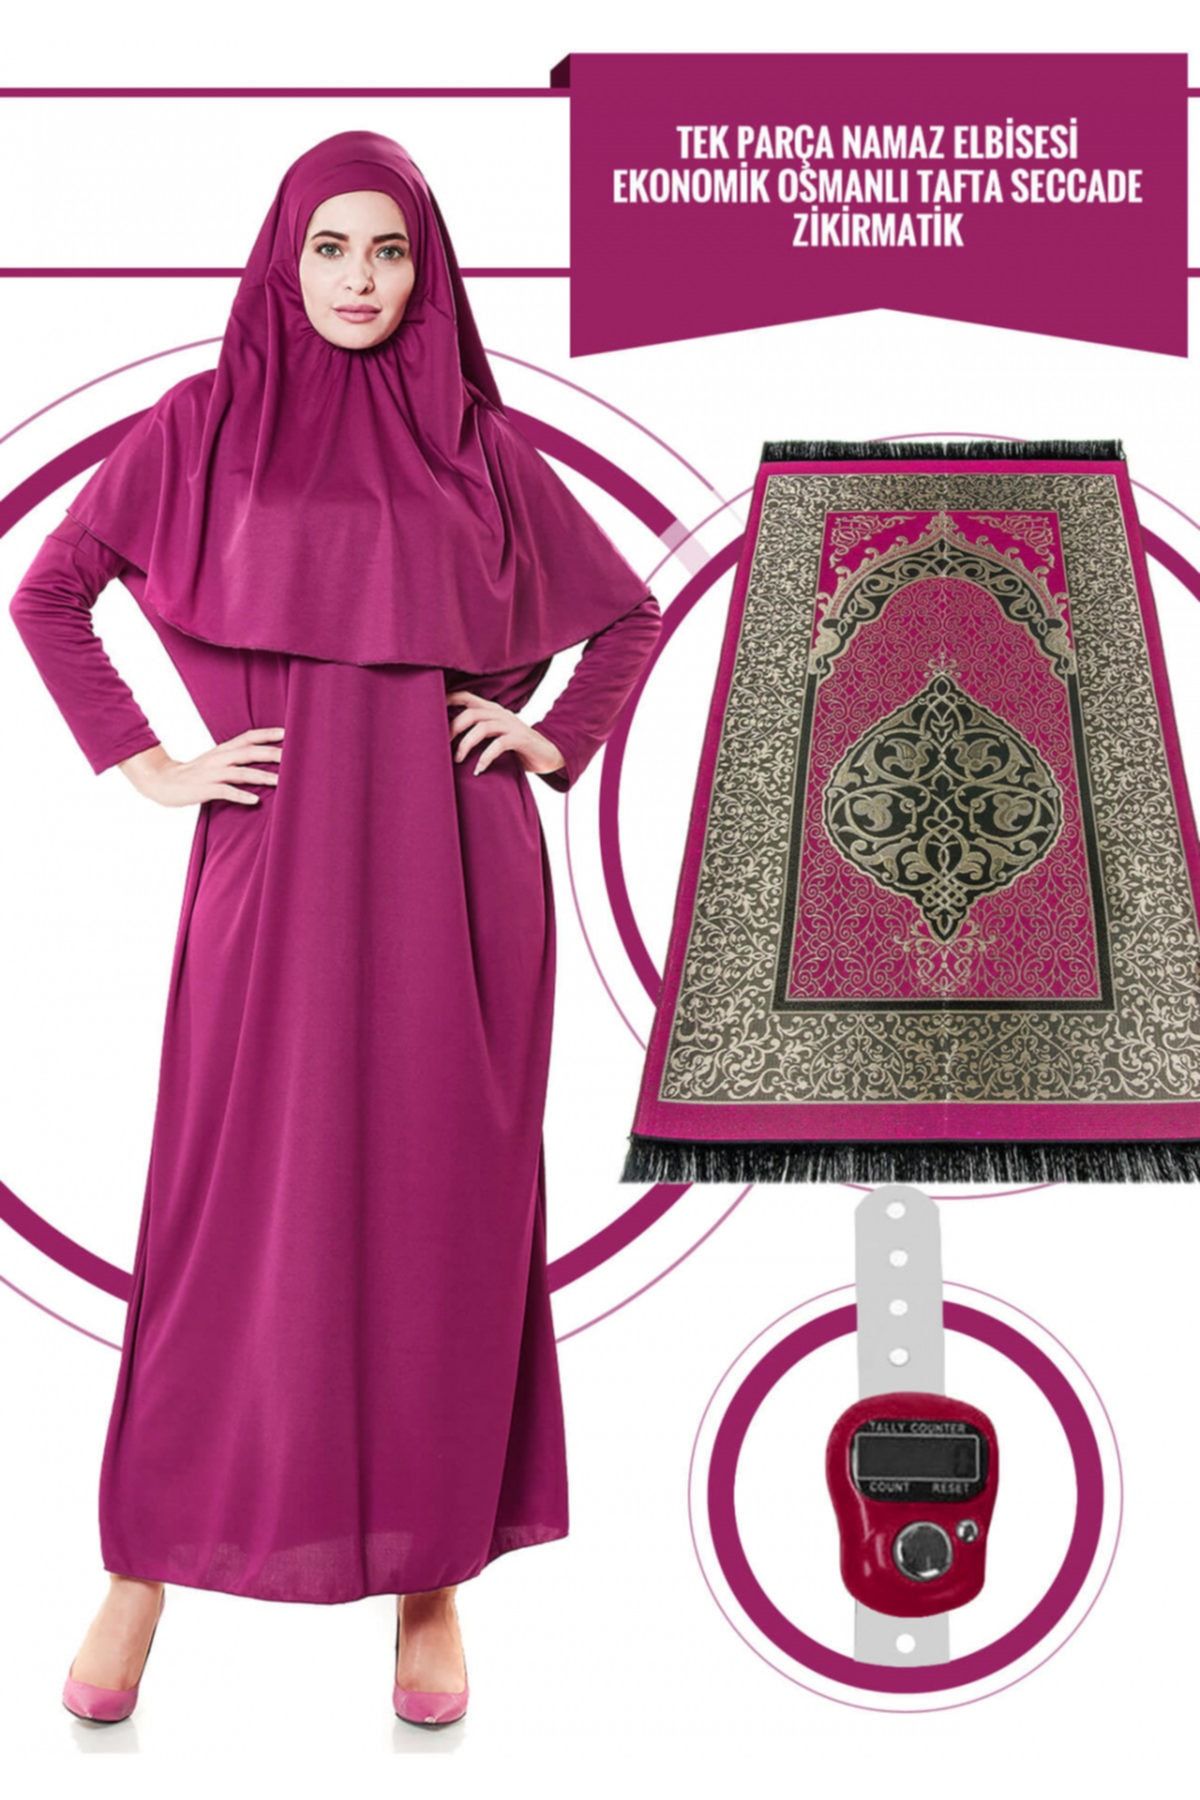 İhvan Fuşya Tek Parça Kadın Elbise 5015 & Seccade & Zikirmatik Üçlü Takım-1120